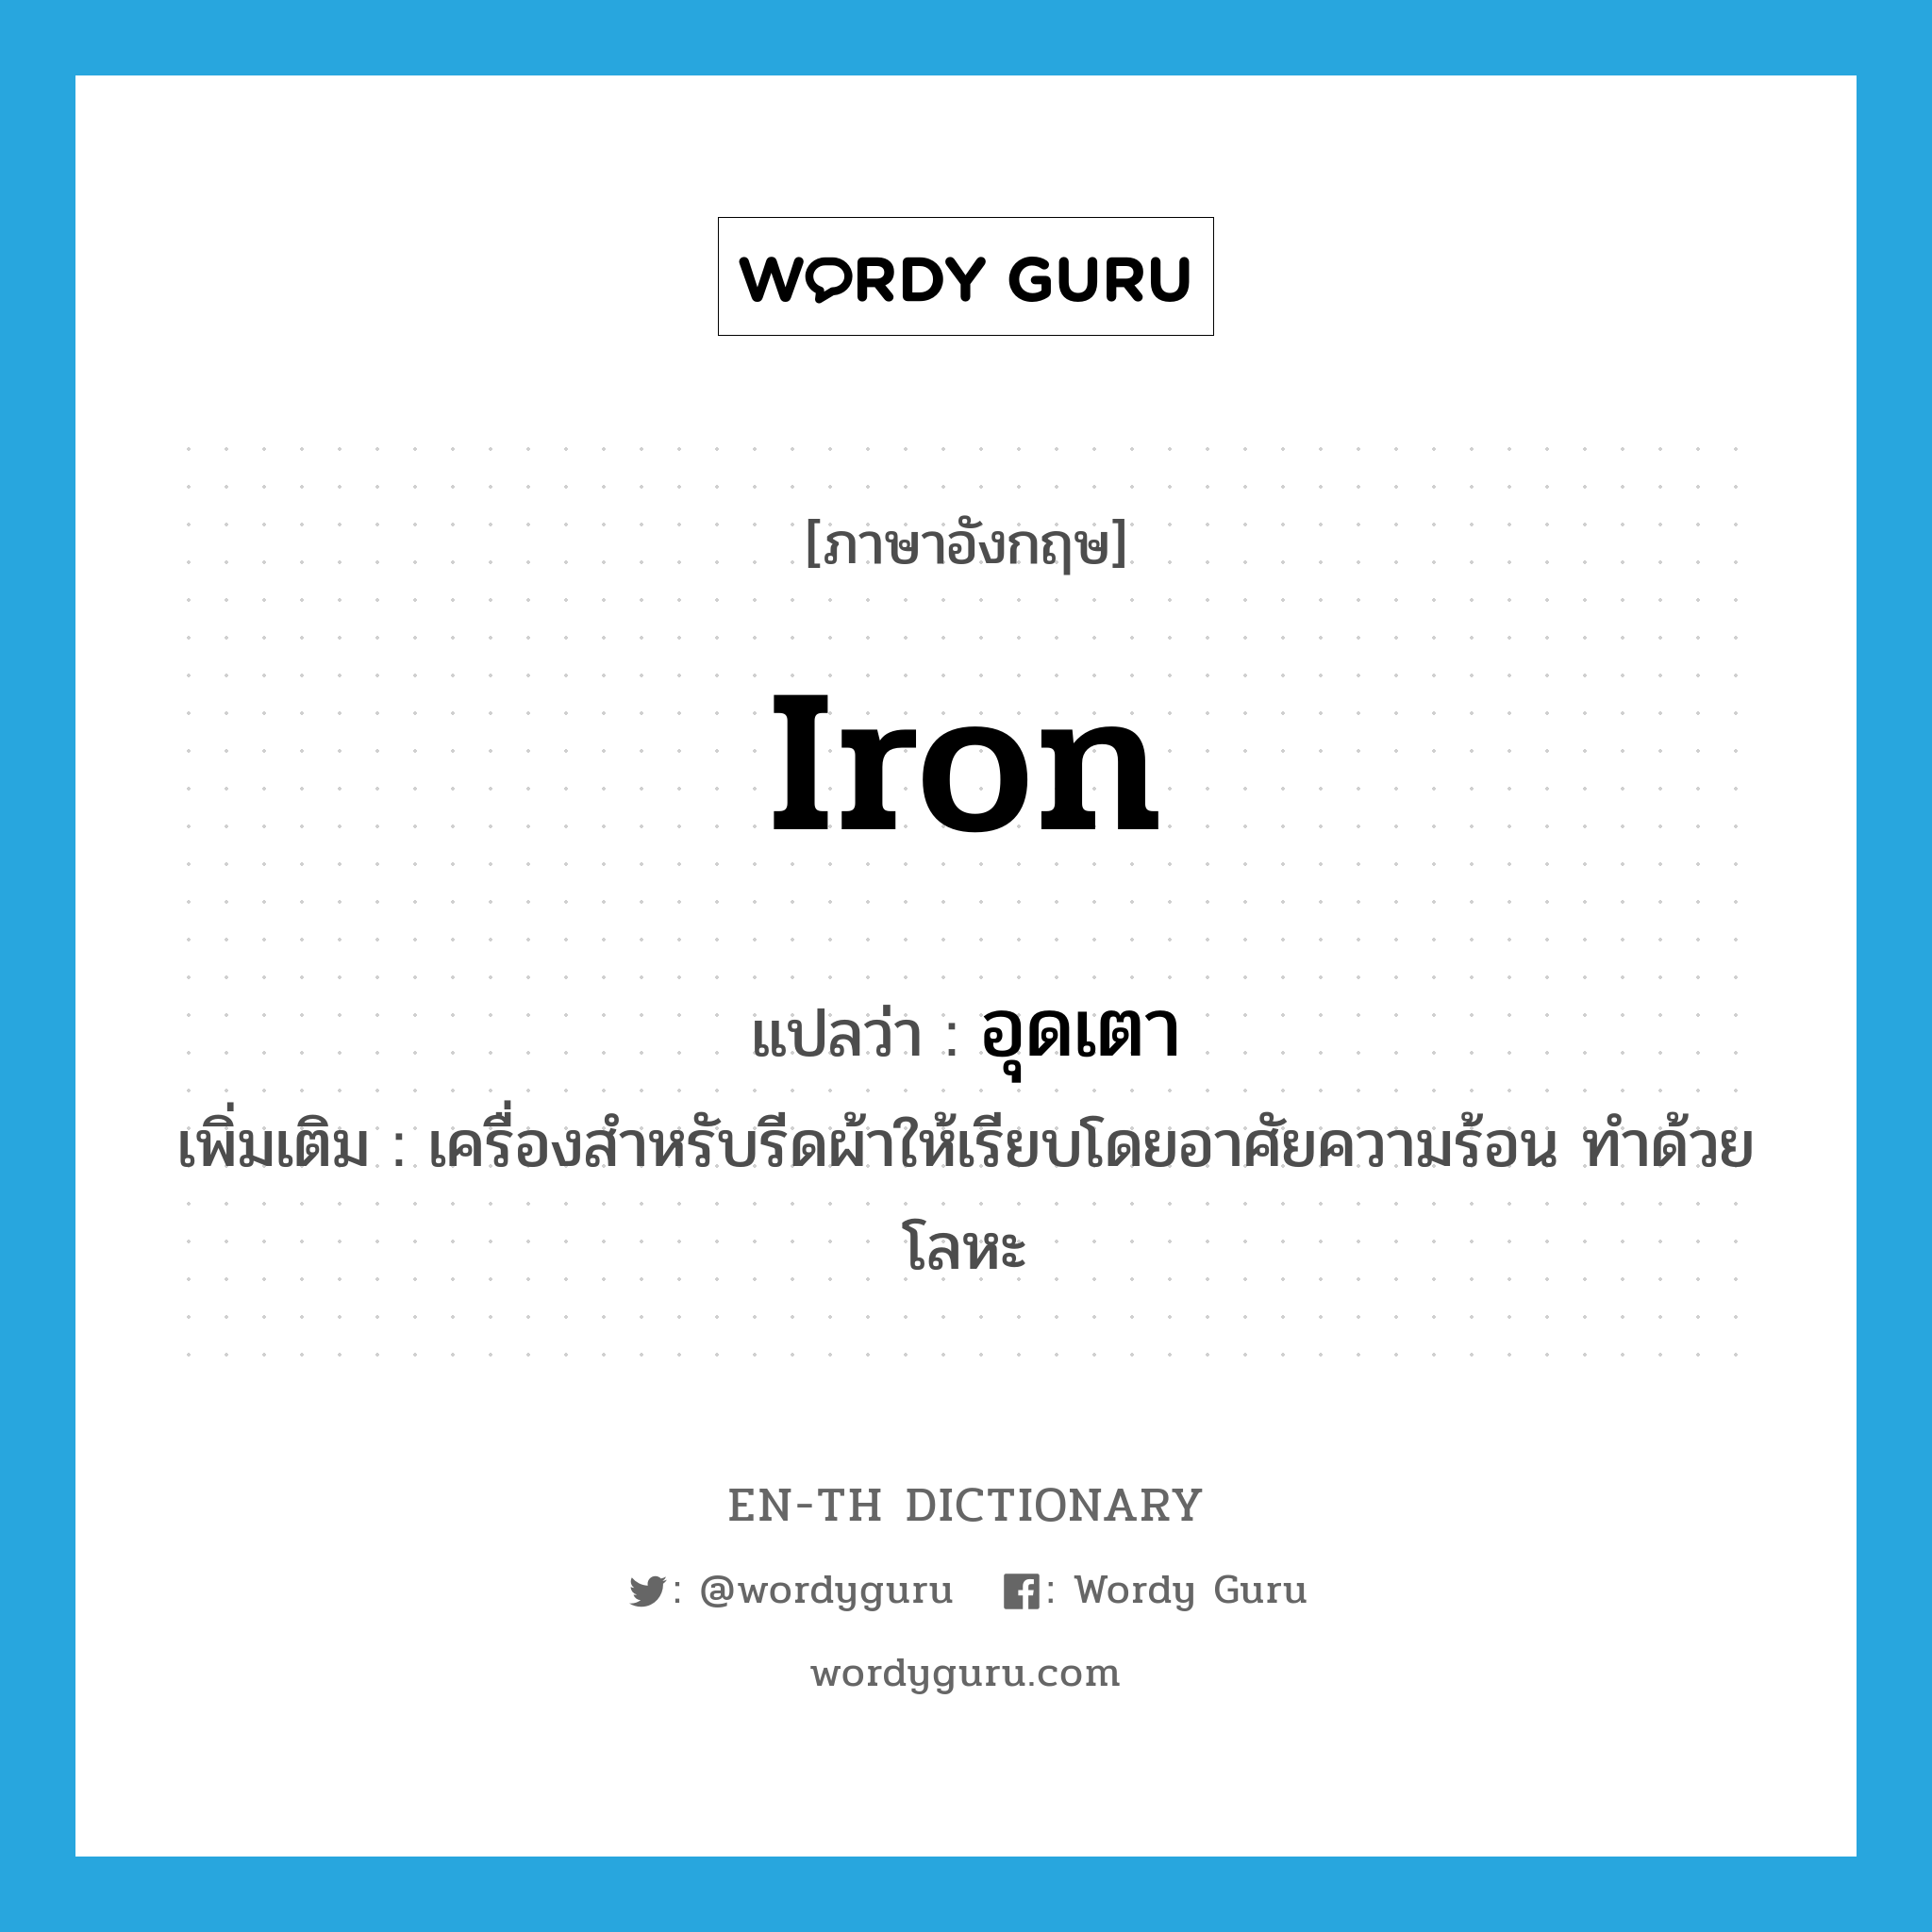 iron แปลว่า?, คำศัพท์ภาษาอังกฤษ iron แปลว่า อุดเตา ประเภท N เพิ่มเติม เครื่องสำหรับรีดผ้าให้เรียบโดยอาศัยความร้อน ทำด้วยโลหะ หมวด N